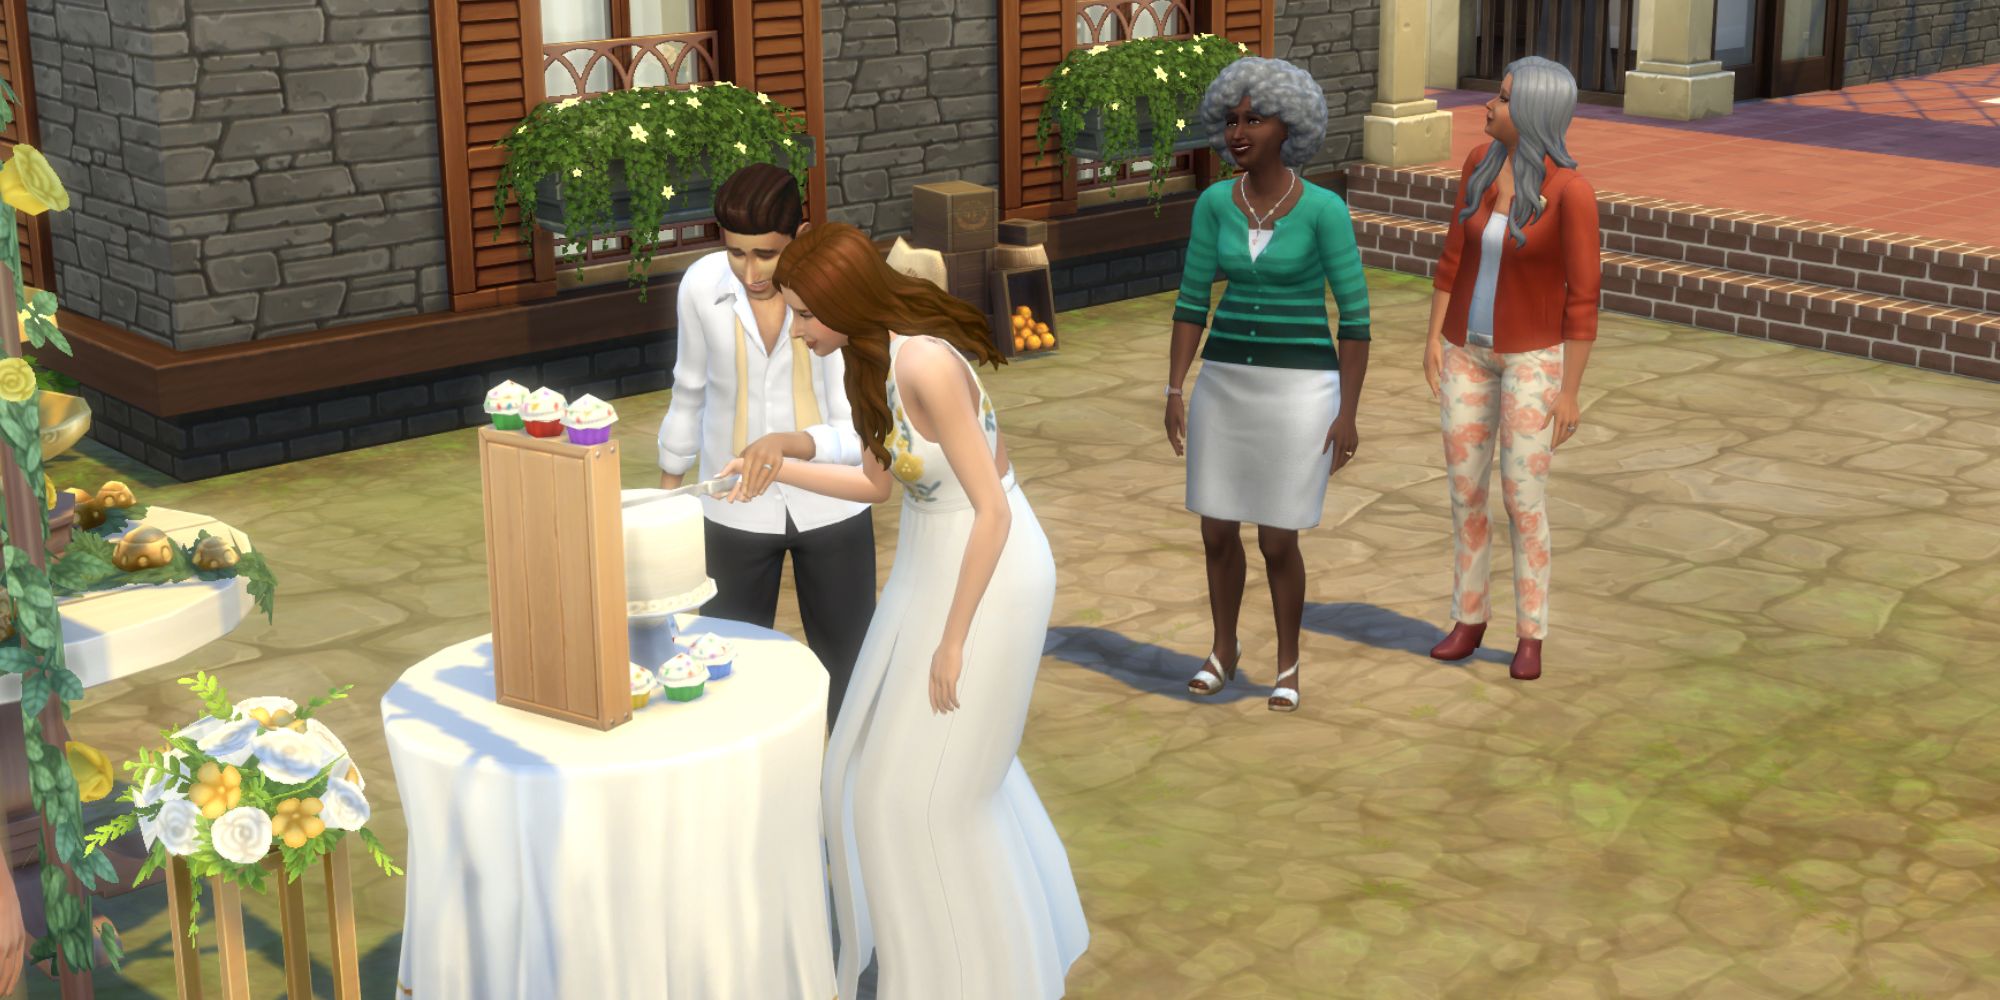 Sims 4 wedding cake cutting